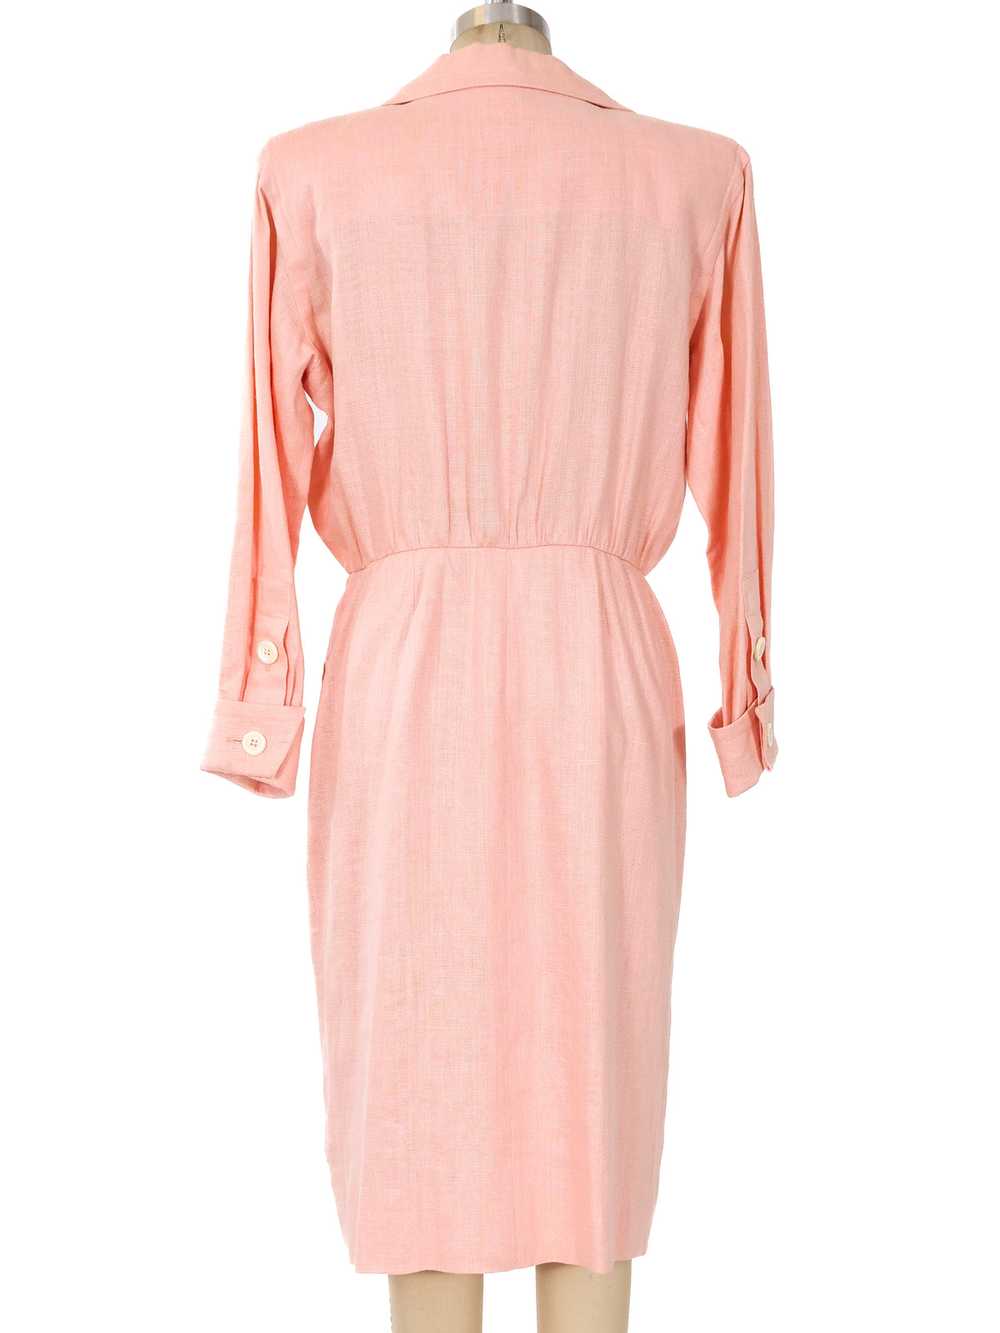 Yves Saint Laurent Blush Linen Dress - image 4